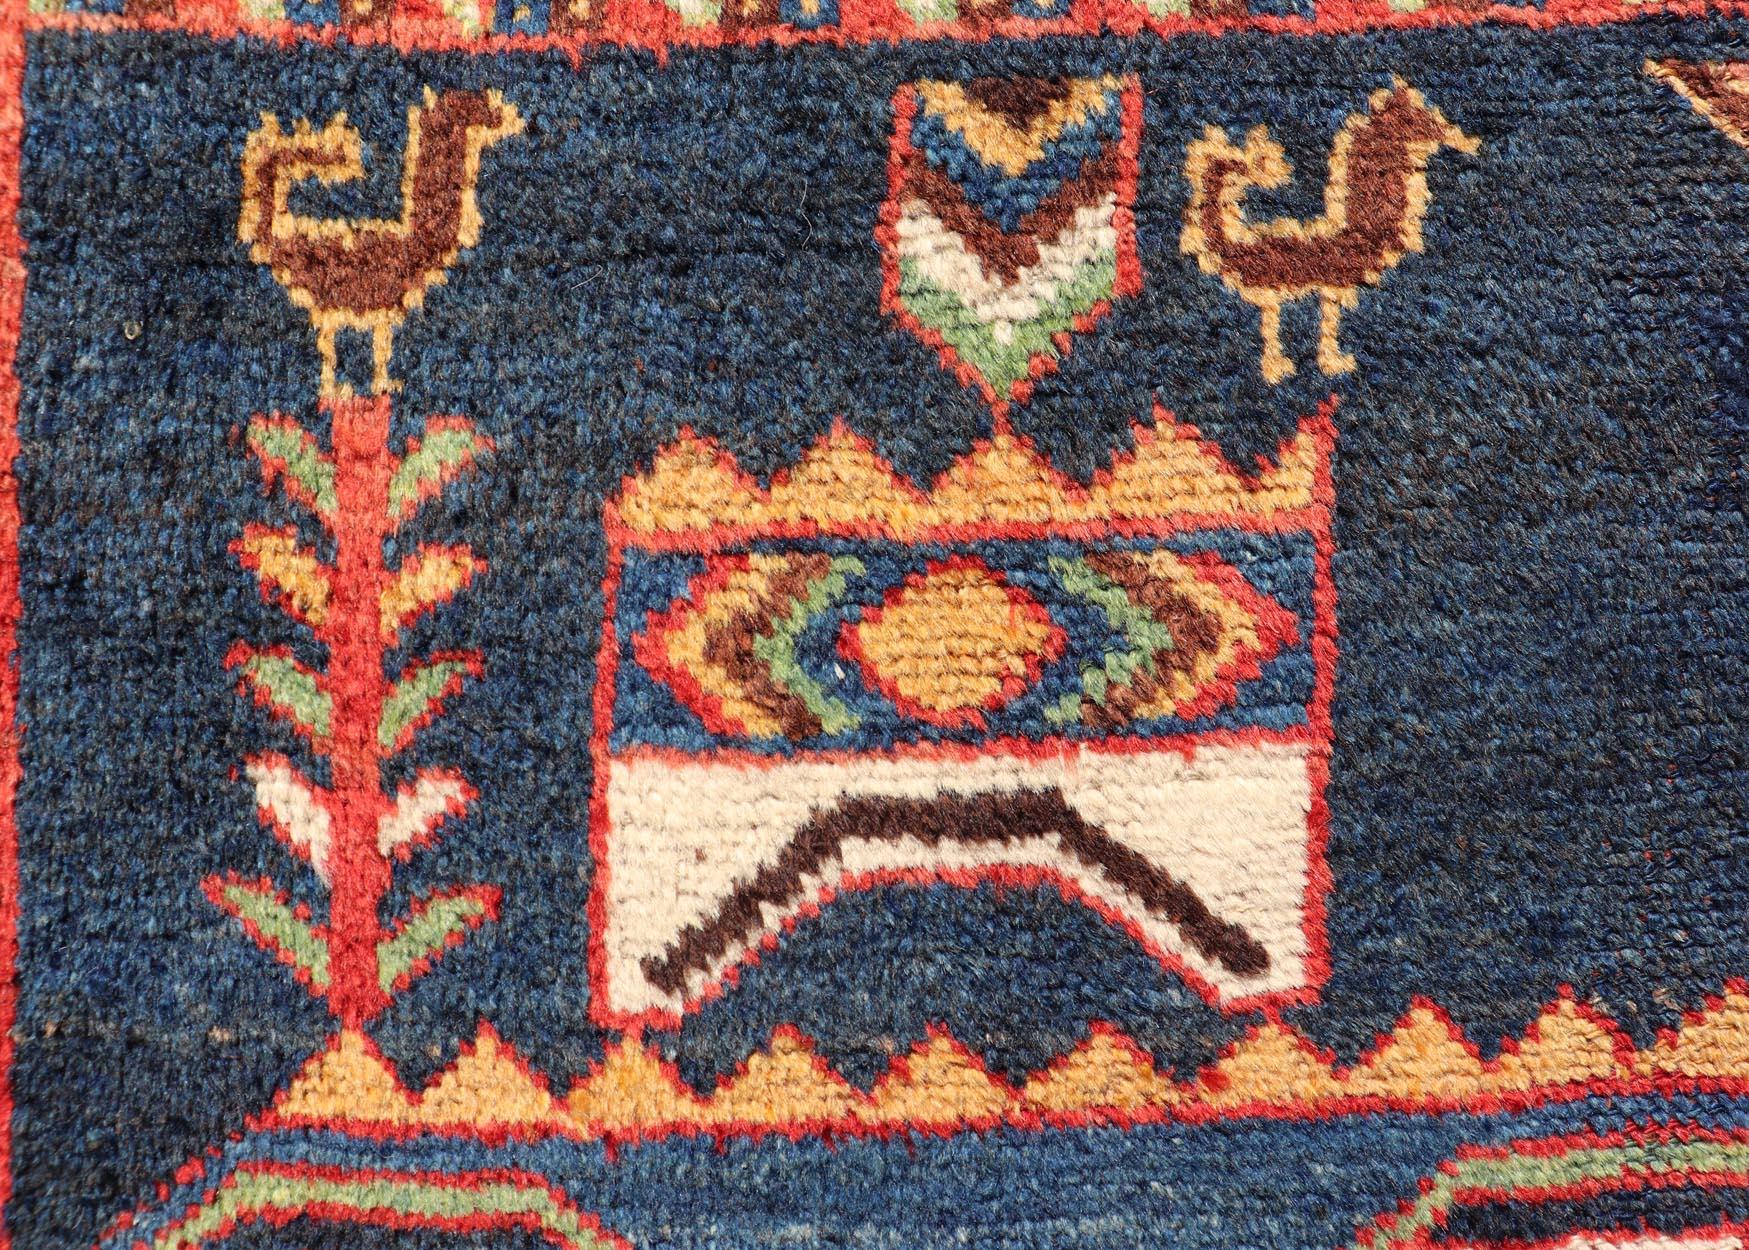 Ancien persan Lori multicolore avec un motif tribal géométrique à grande échelle sur toute sa surface, 
Keivan Woven Arts / tapis EMB-9569-P13068, pays d'origine / type : Iran / lori, vers 1900

Mesures : 4'9 x 8'6.